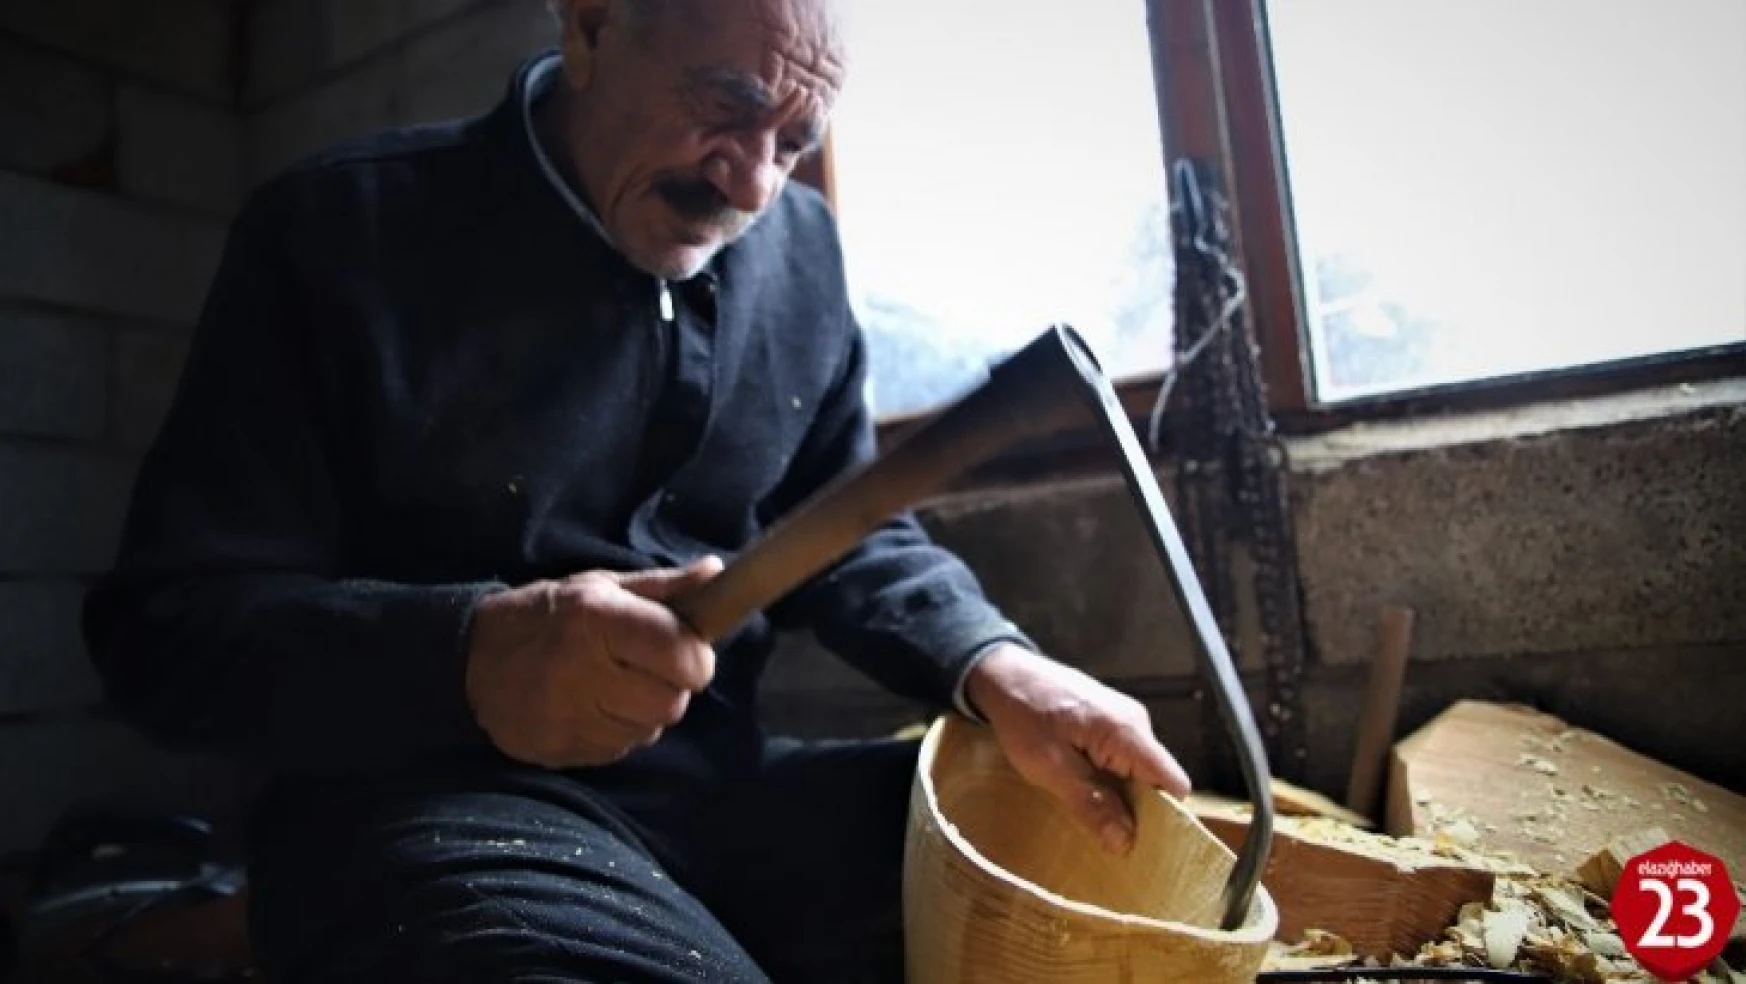 69 yaşında, saz teknesi yapıp Fransa'ya bile satıyor